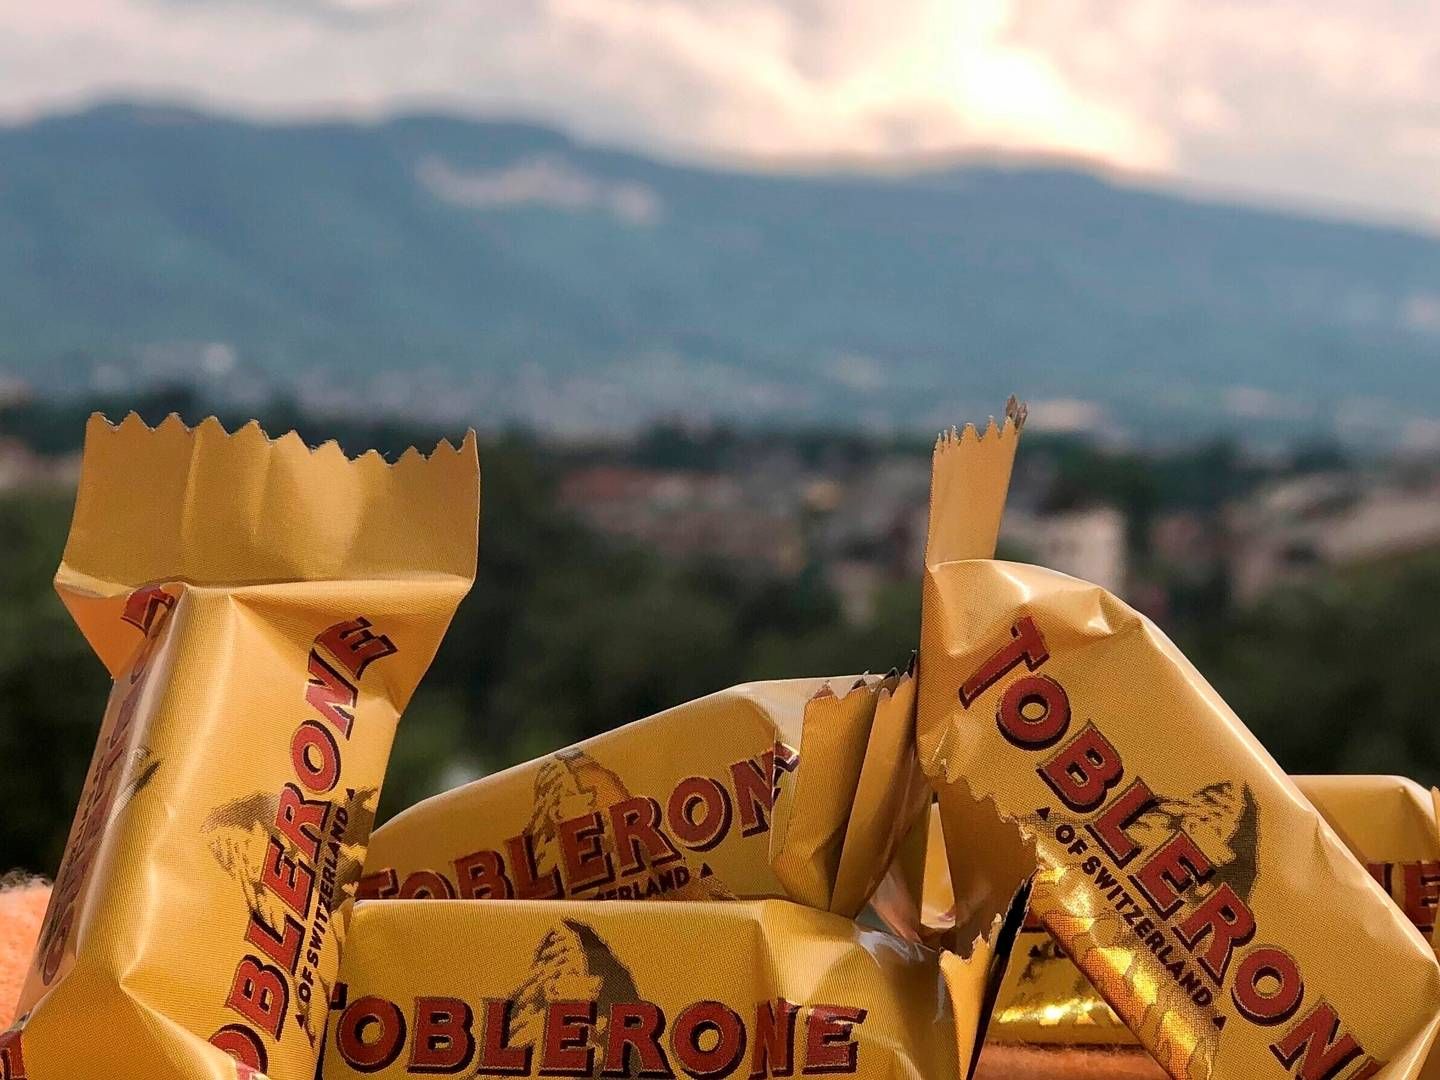 Toblerone-mærket indgår i den lange række af chokolade- og kiksebrands i fødevarekoncernen Mondelez. | Foto: Christiane Oelrich/AP/Ritzau Scanpix